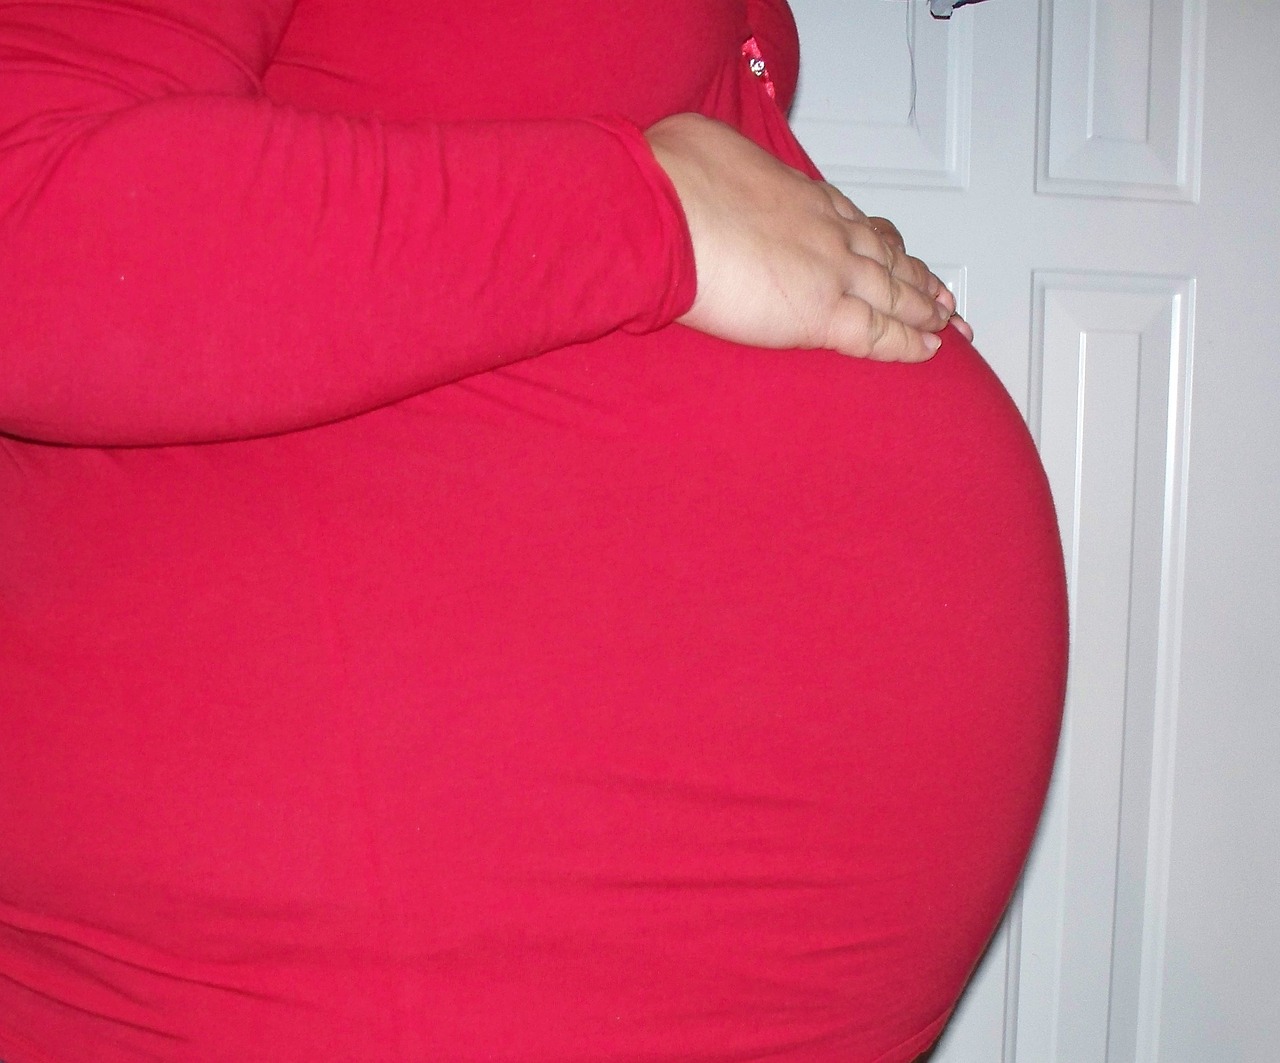 pregnancy baby pregnant woman free photo